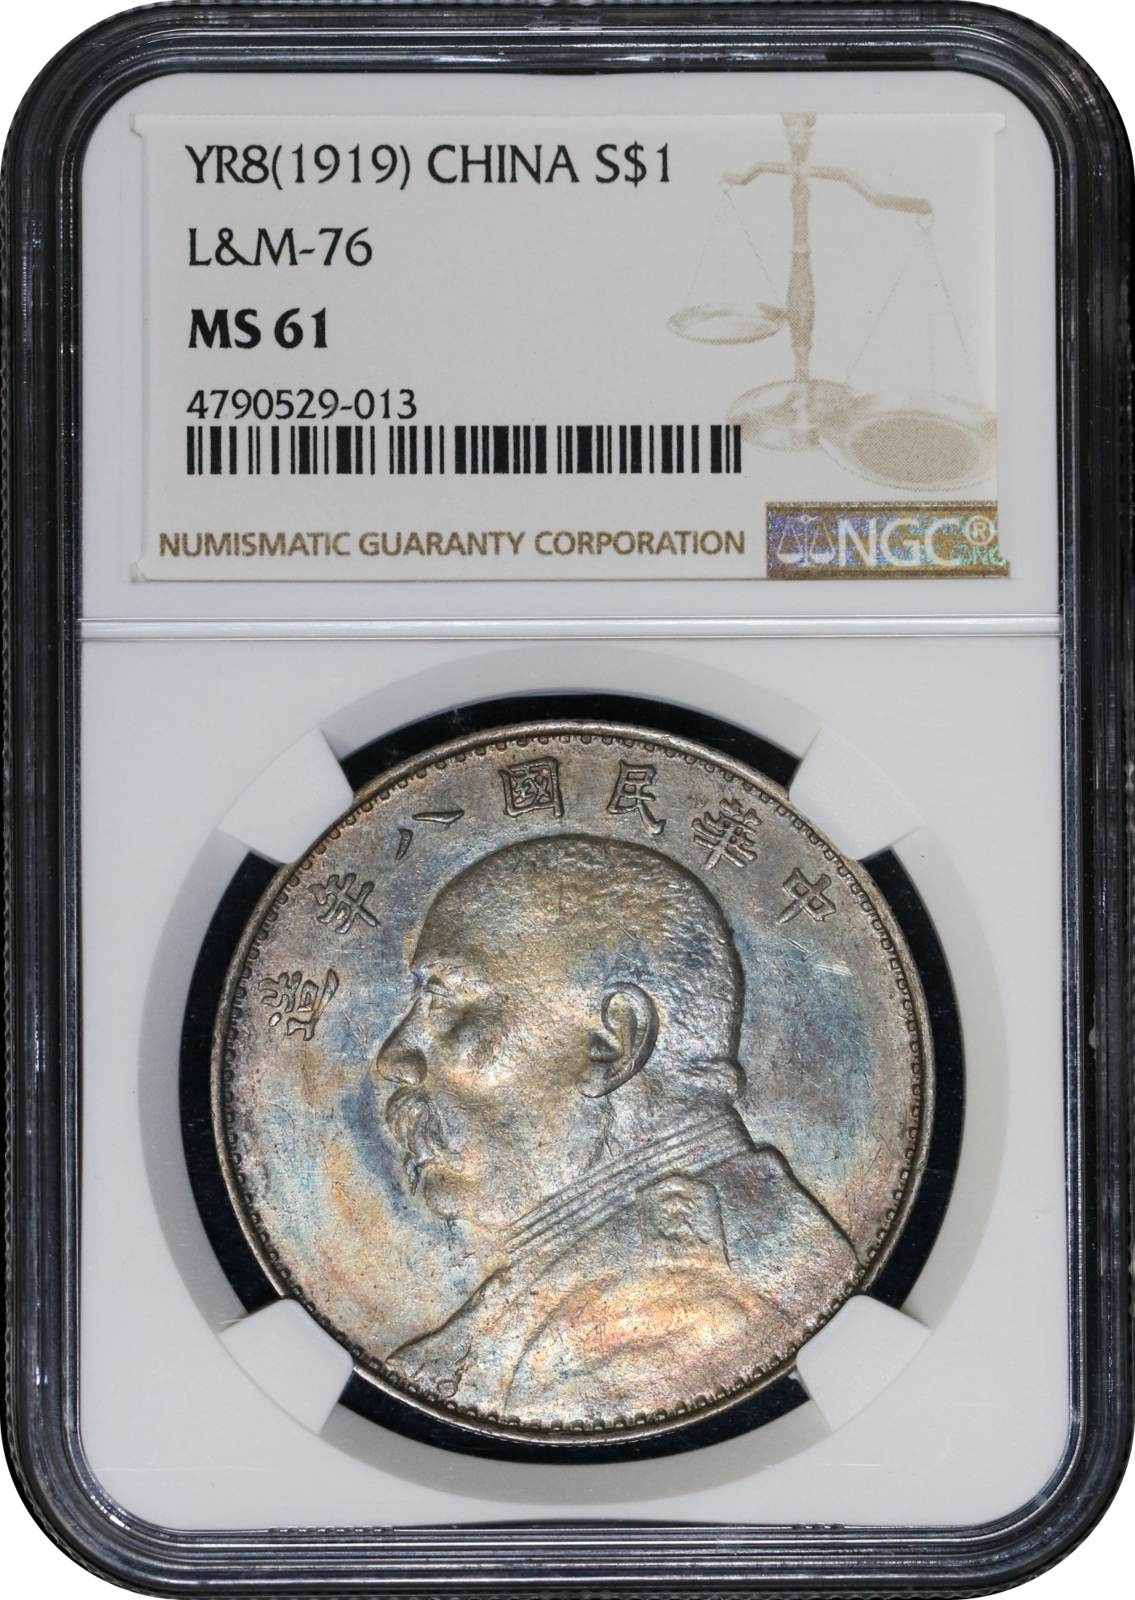 China Republic 1919 $1 YSK YR8 KEY YEAR NGC MS61 | Monetarium 